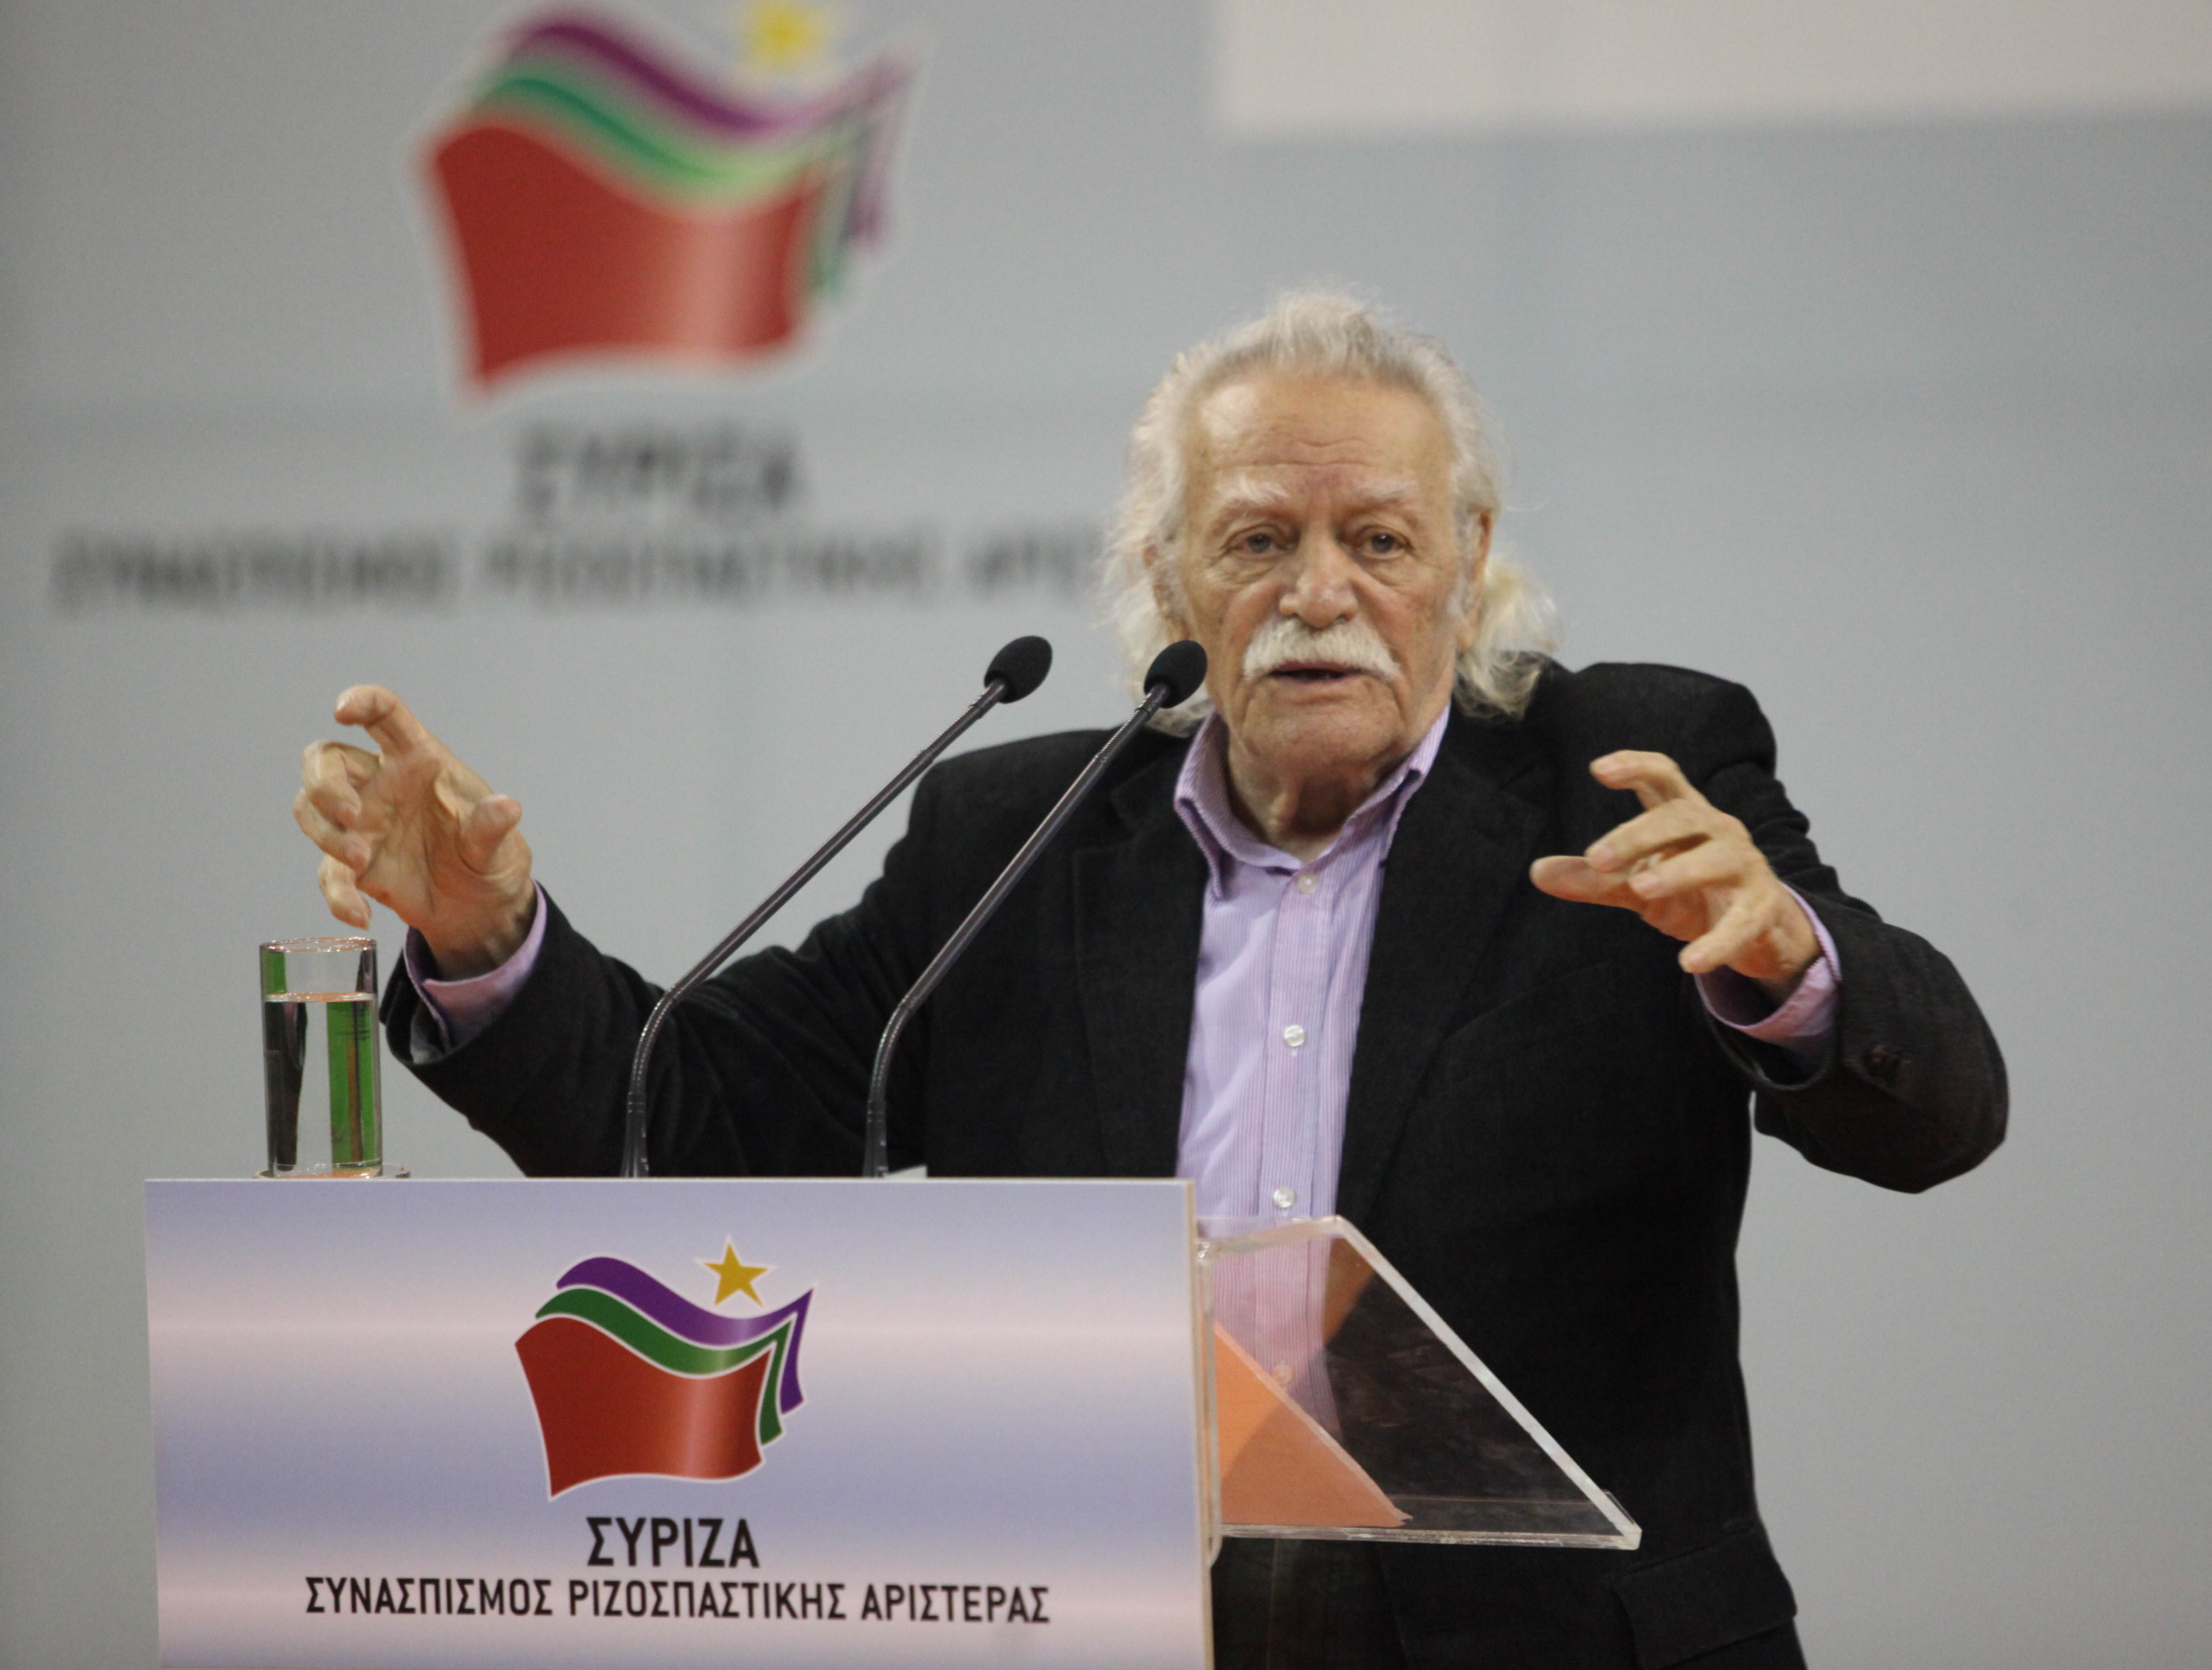 Ο Μ. Γλέζος επικεφαλής στο ψηφοδέλτιο Επικρατείας του ΣΥΡΙΖΑ